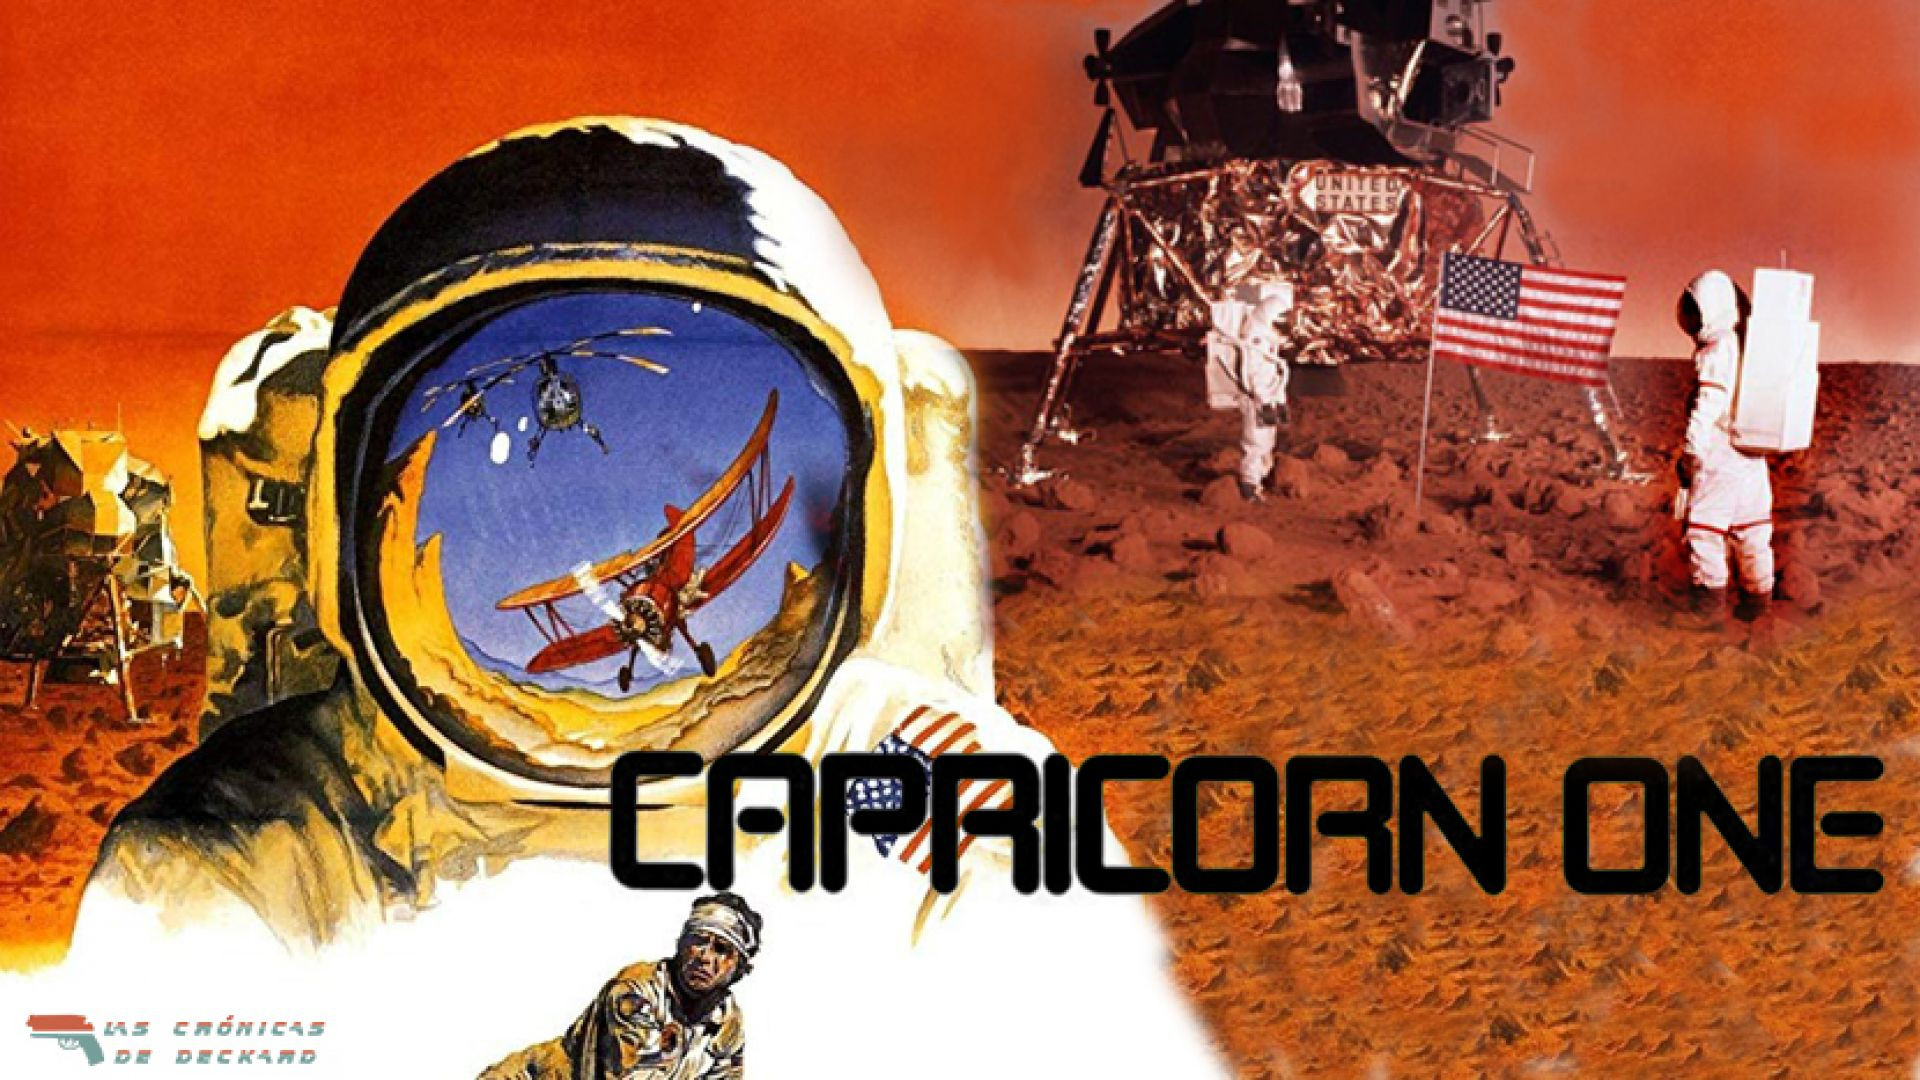 Capricornio Uno (1977) cas.